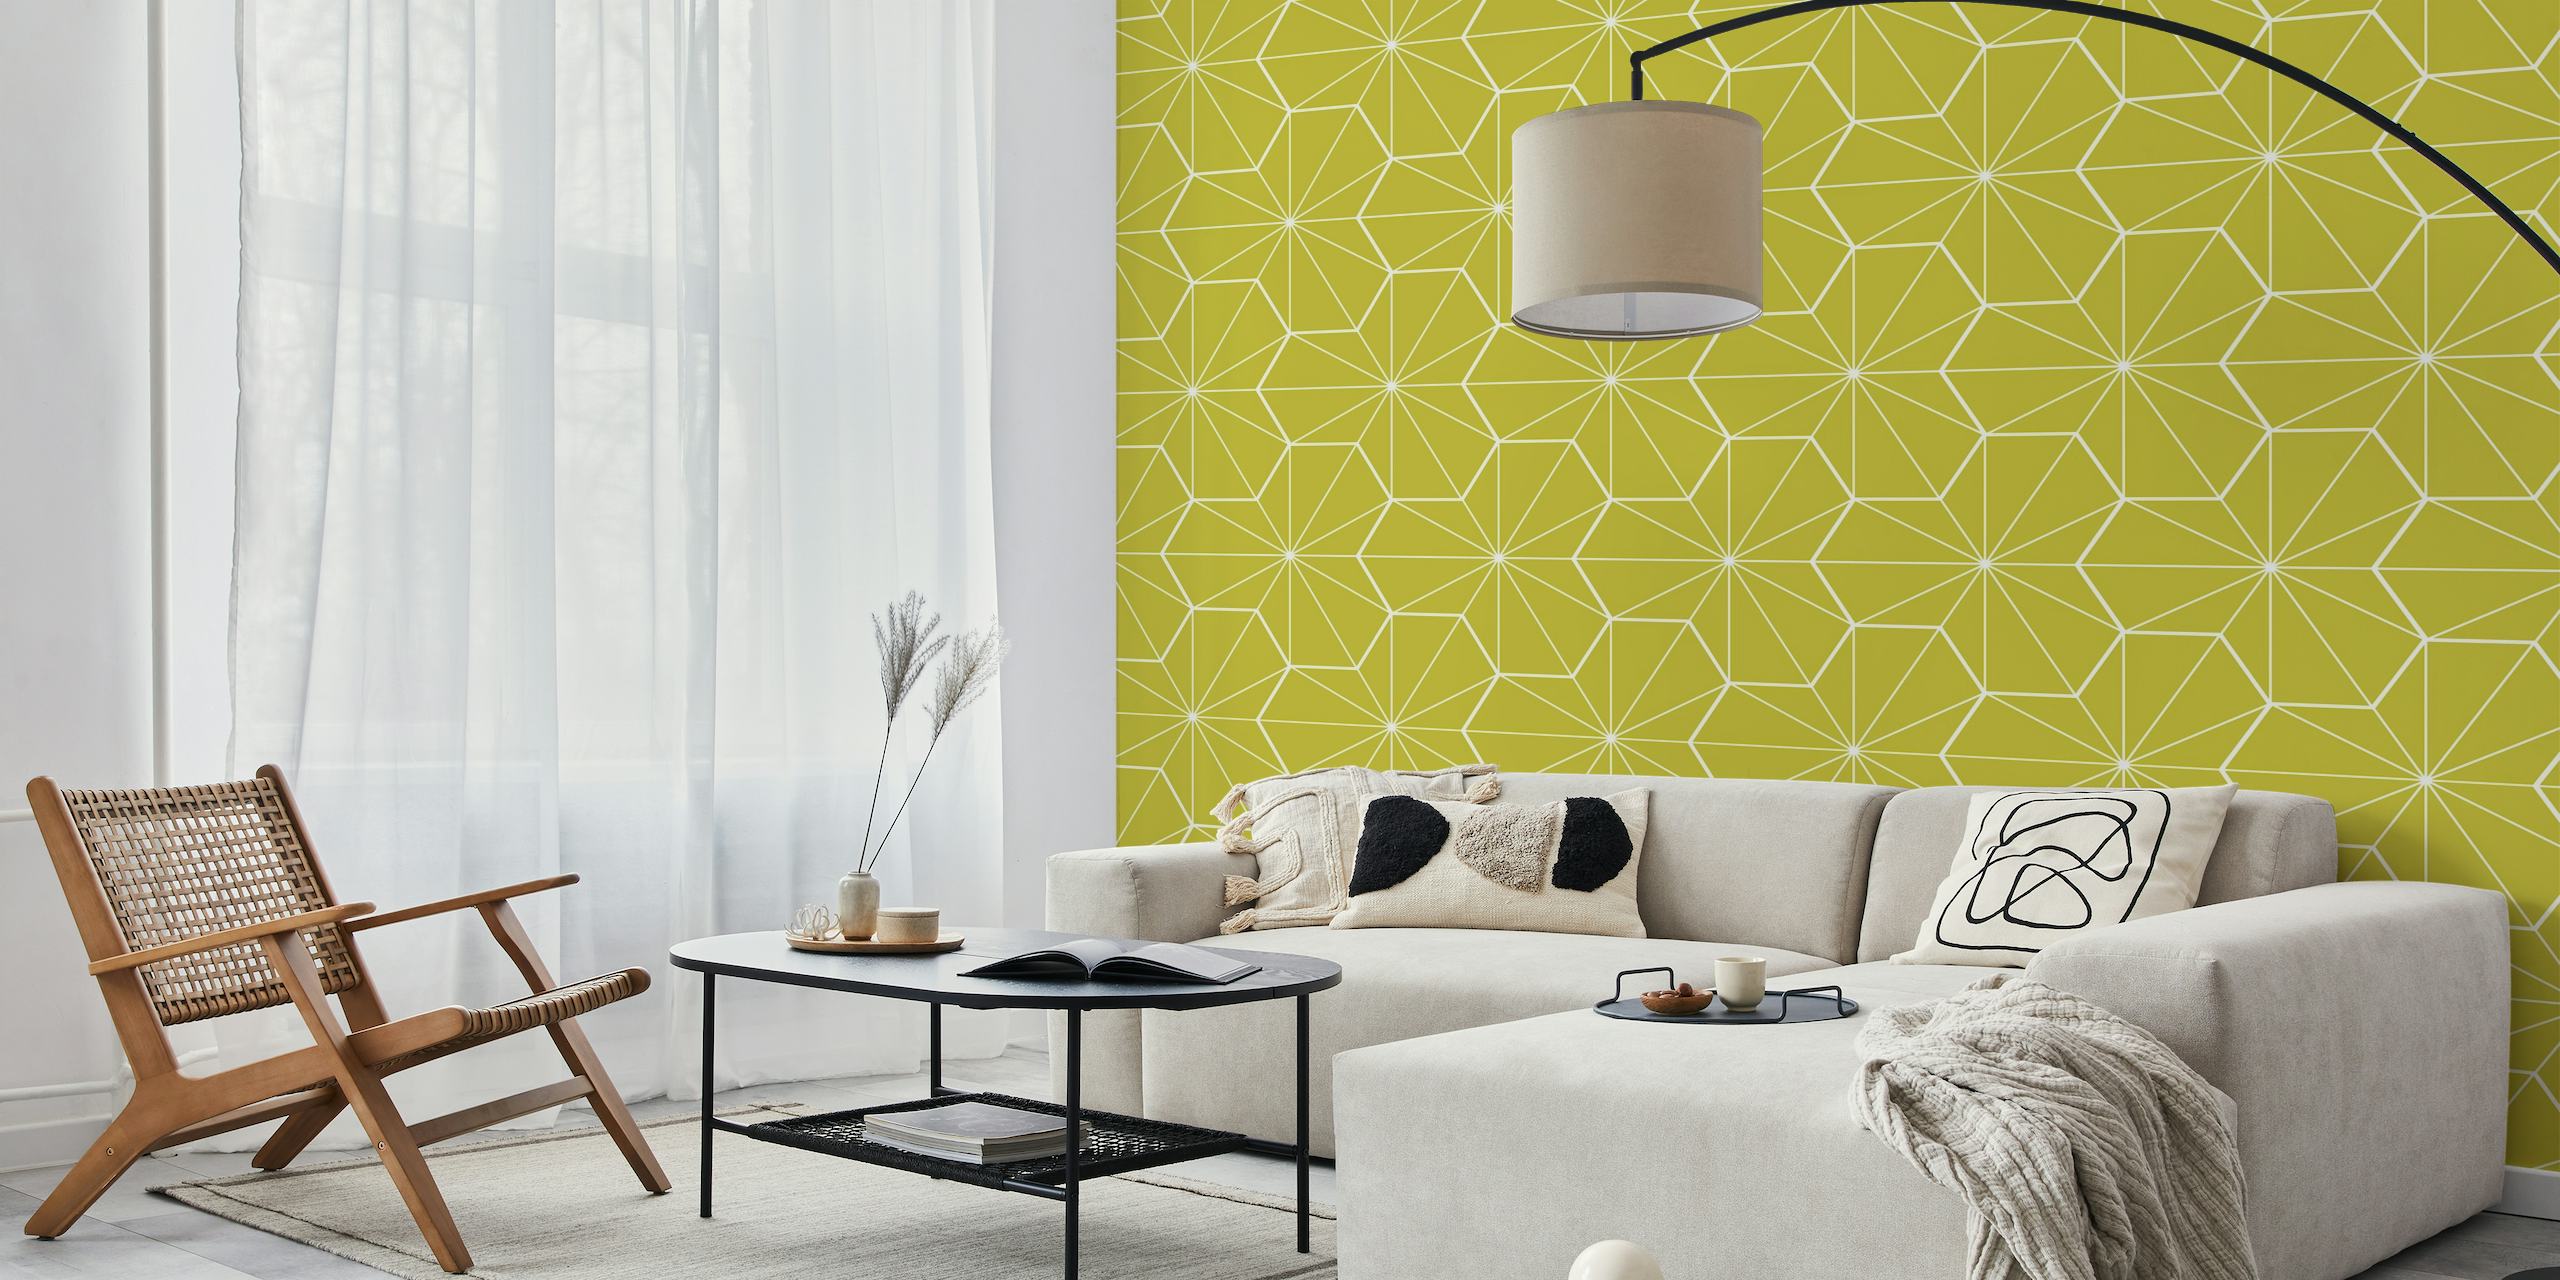 Vilkas vuosisadan puolivälin tyylinen geometrinen kuviollinen seinämaalaus kelta-vihreissä sävyissä.